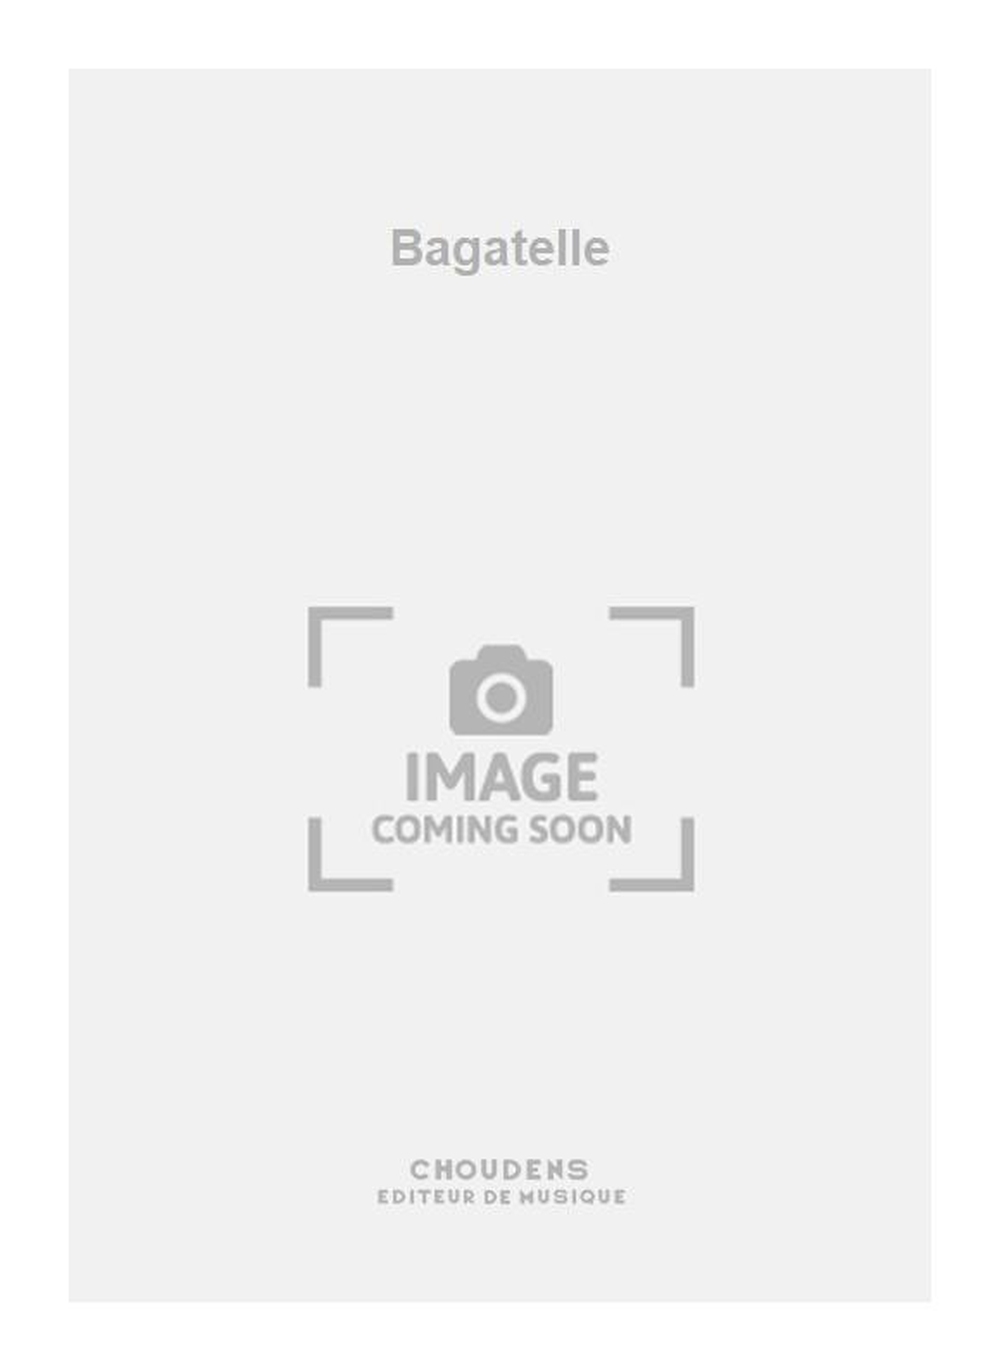 Jacques Offenbach: Bagatelle